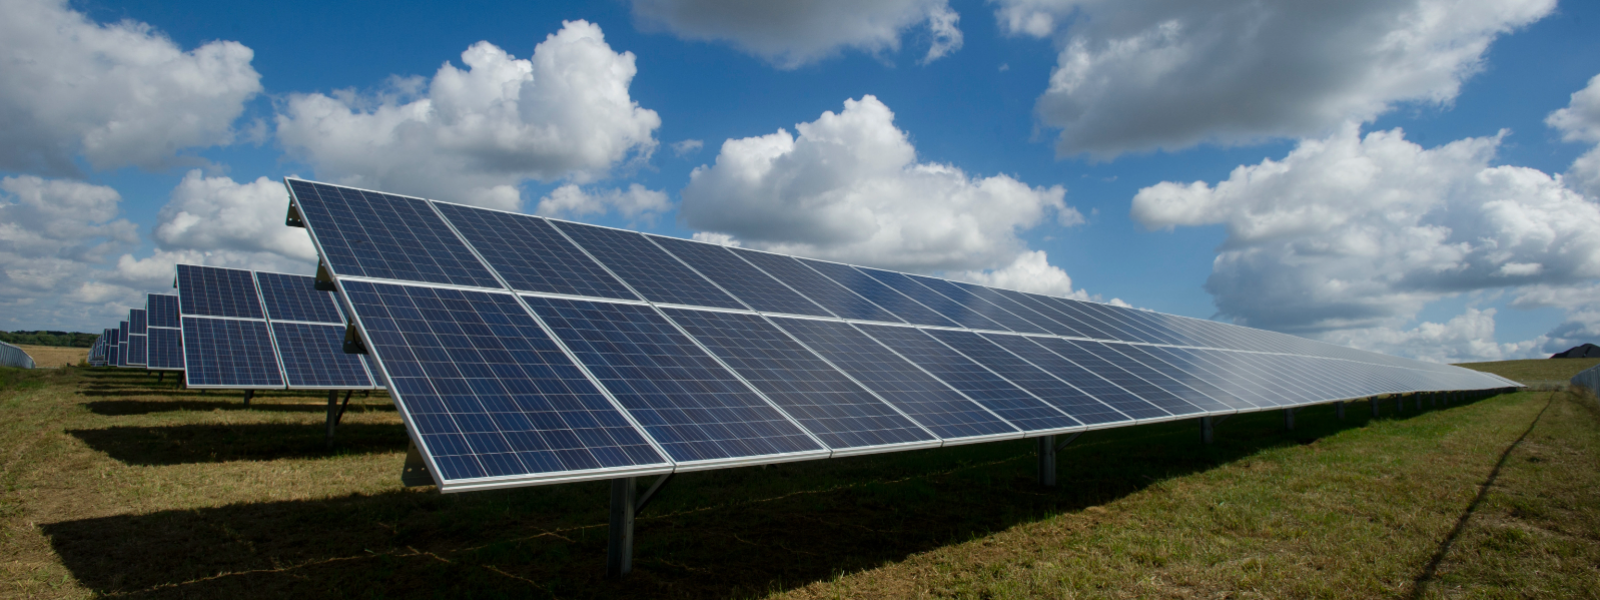 SUNORAMA OÜ - Tegeleme kvaliteetsete päikesepaneelide müügi ja paigaldusega, pakkudes säästvaid energialahendusi nii...